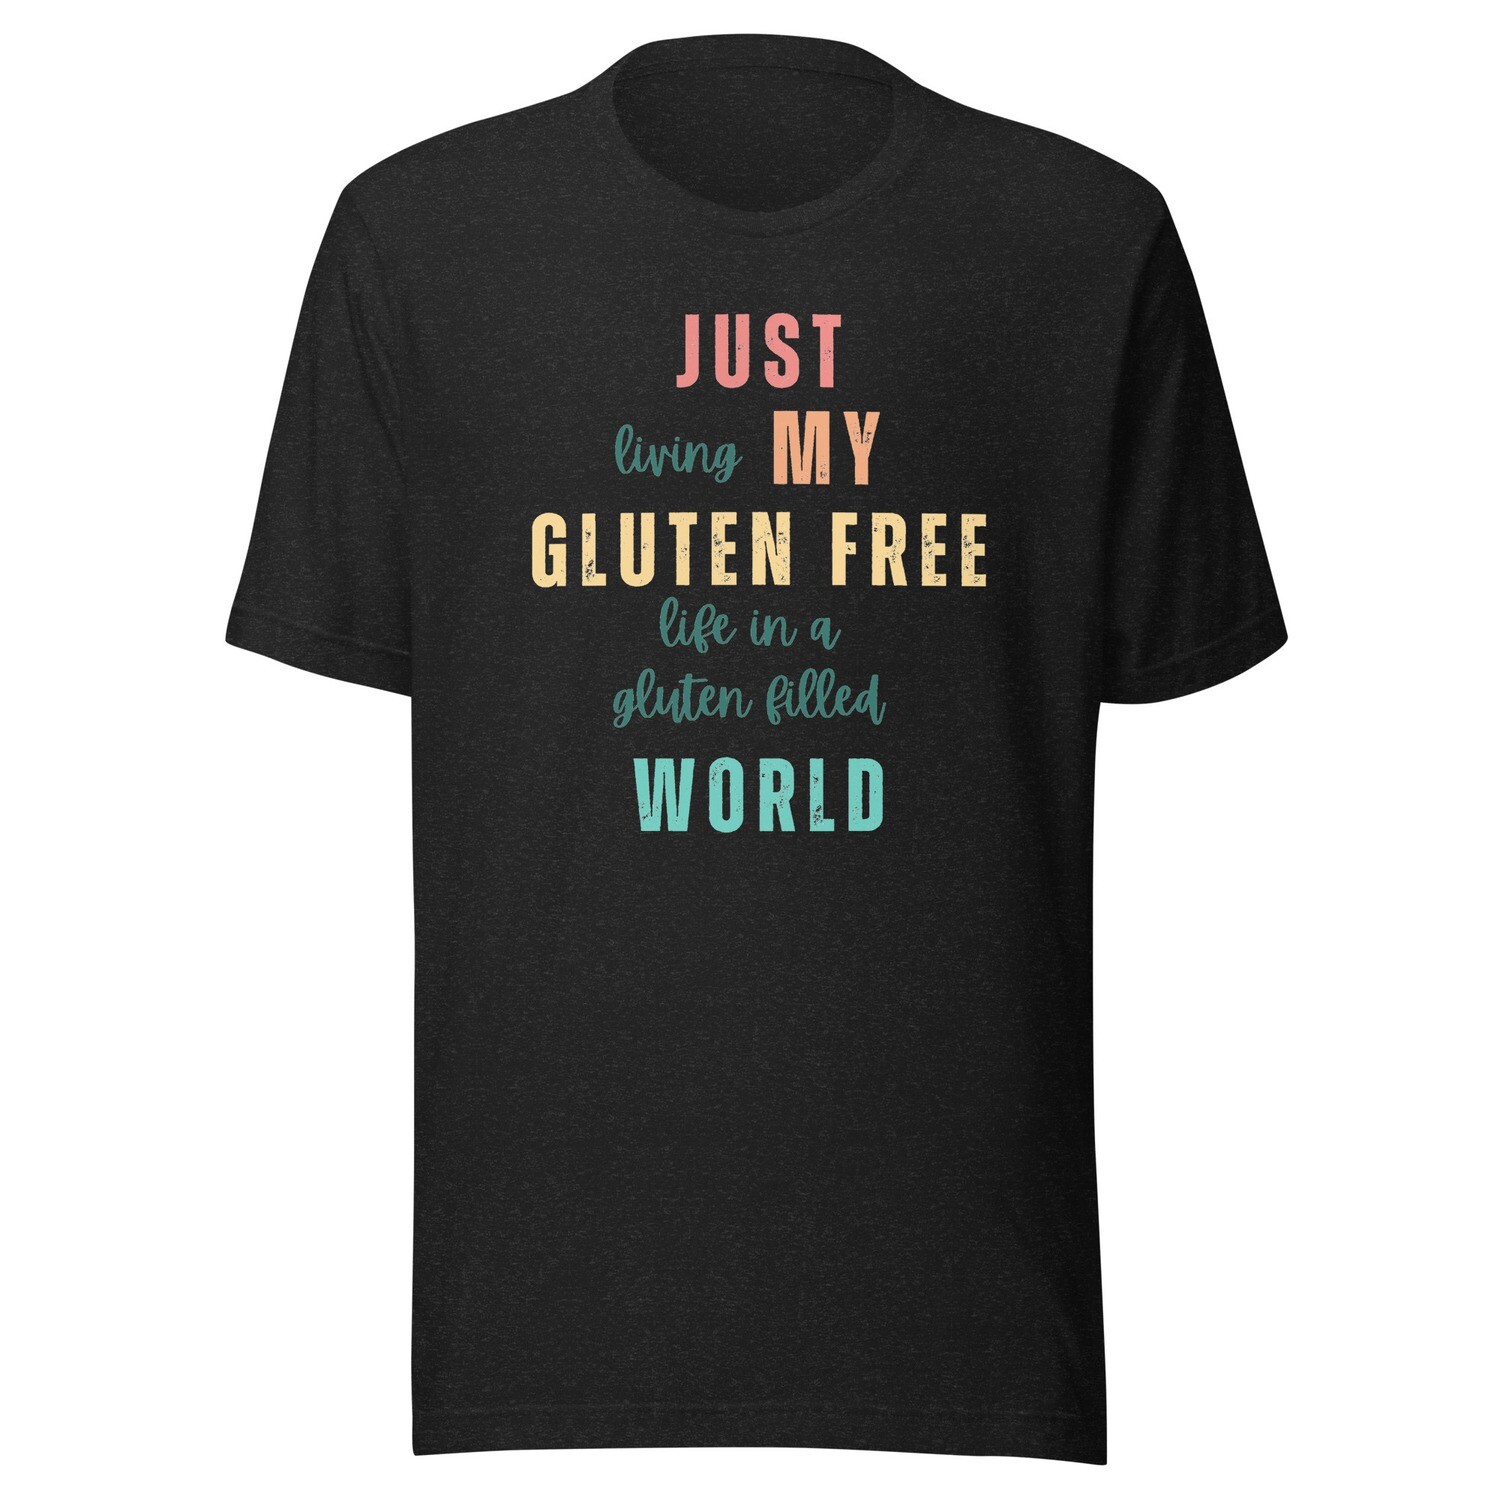 'Just My Gluten Free World' Adult Unisex Tee